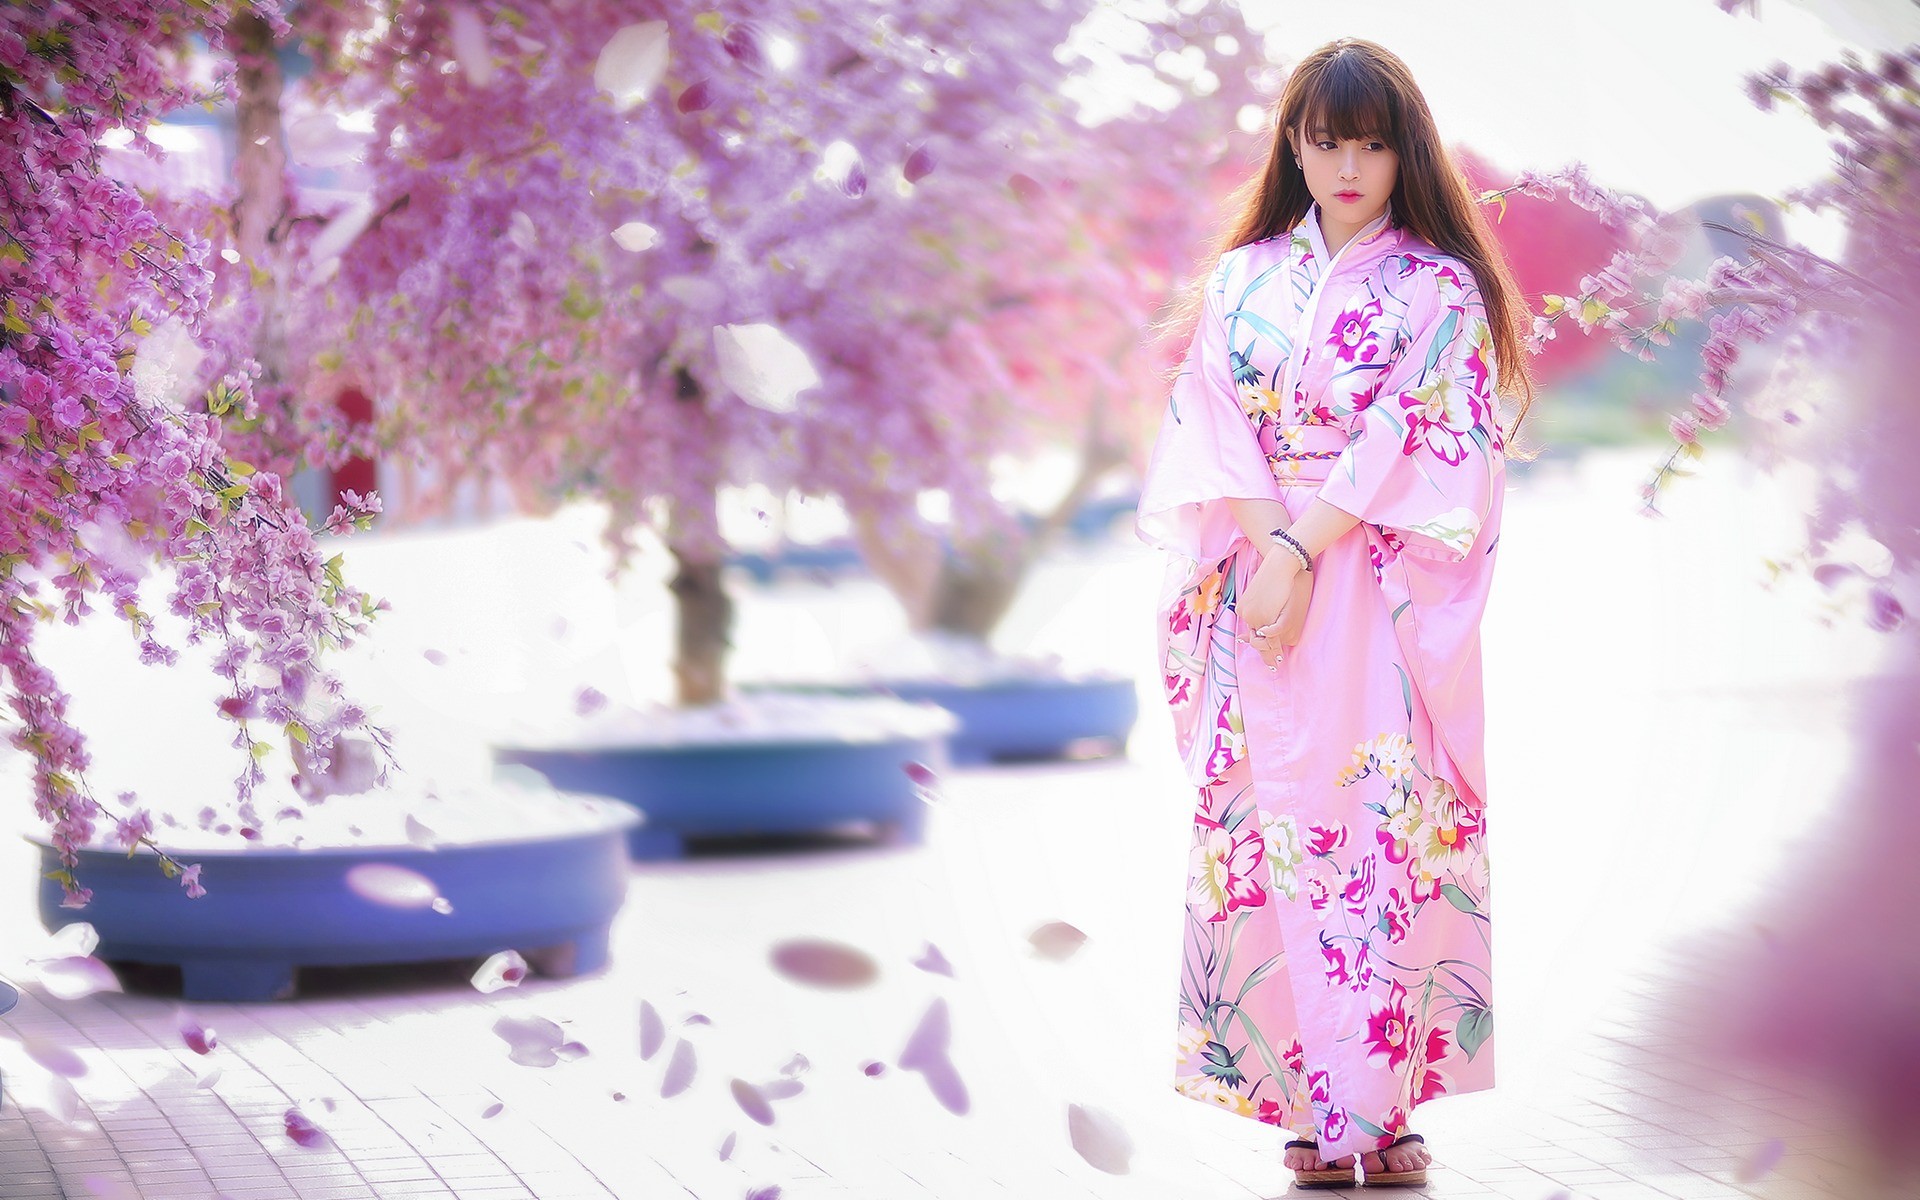 Asian Model Women Brunette Long Hair Women Outdoors Japanese Clothes Geisha Trees Pink Dress Flowers 1920x1200